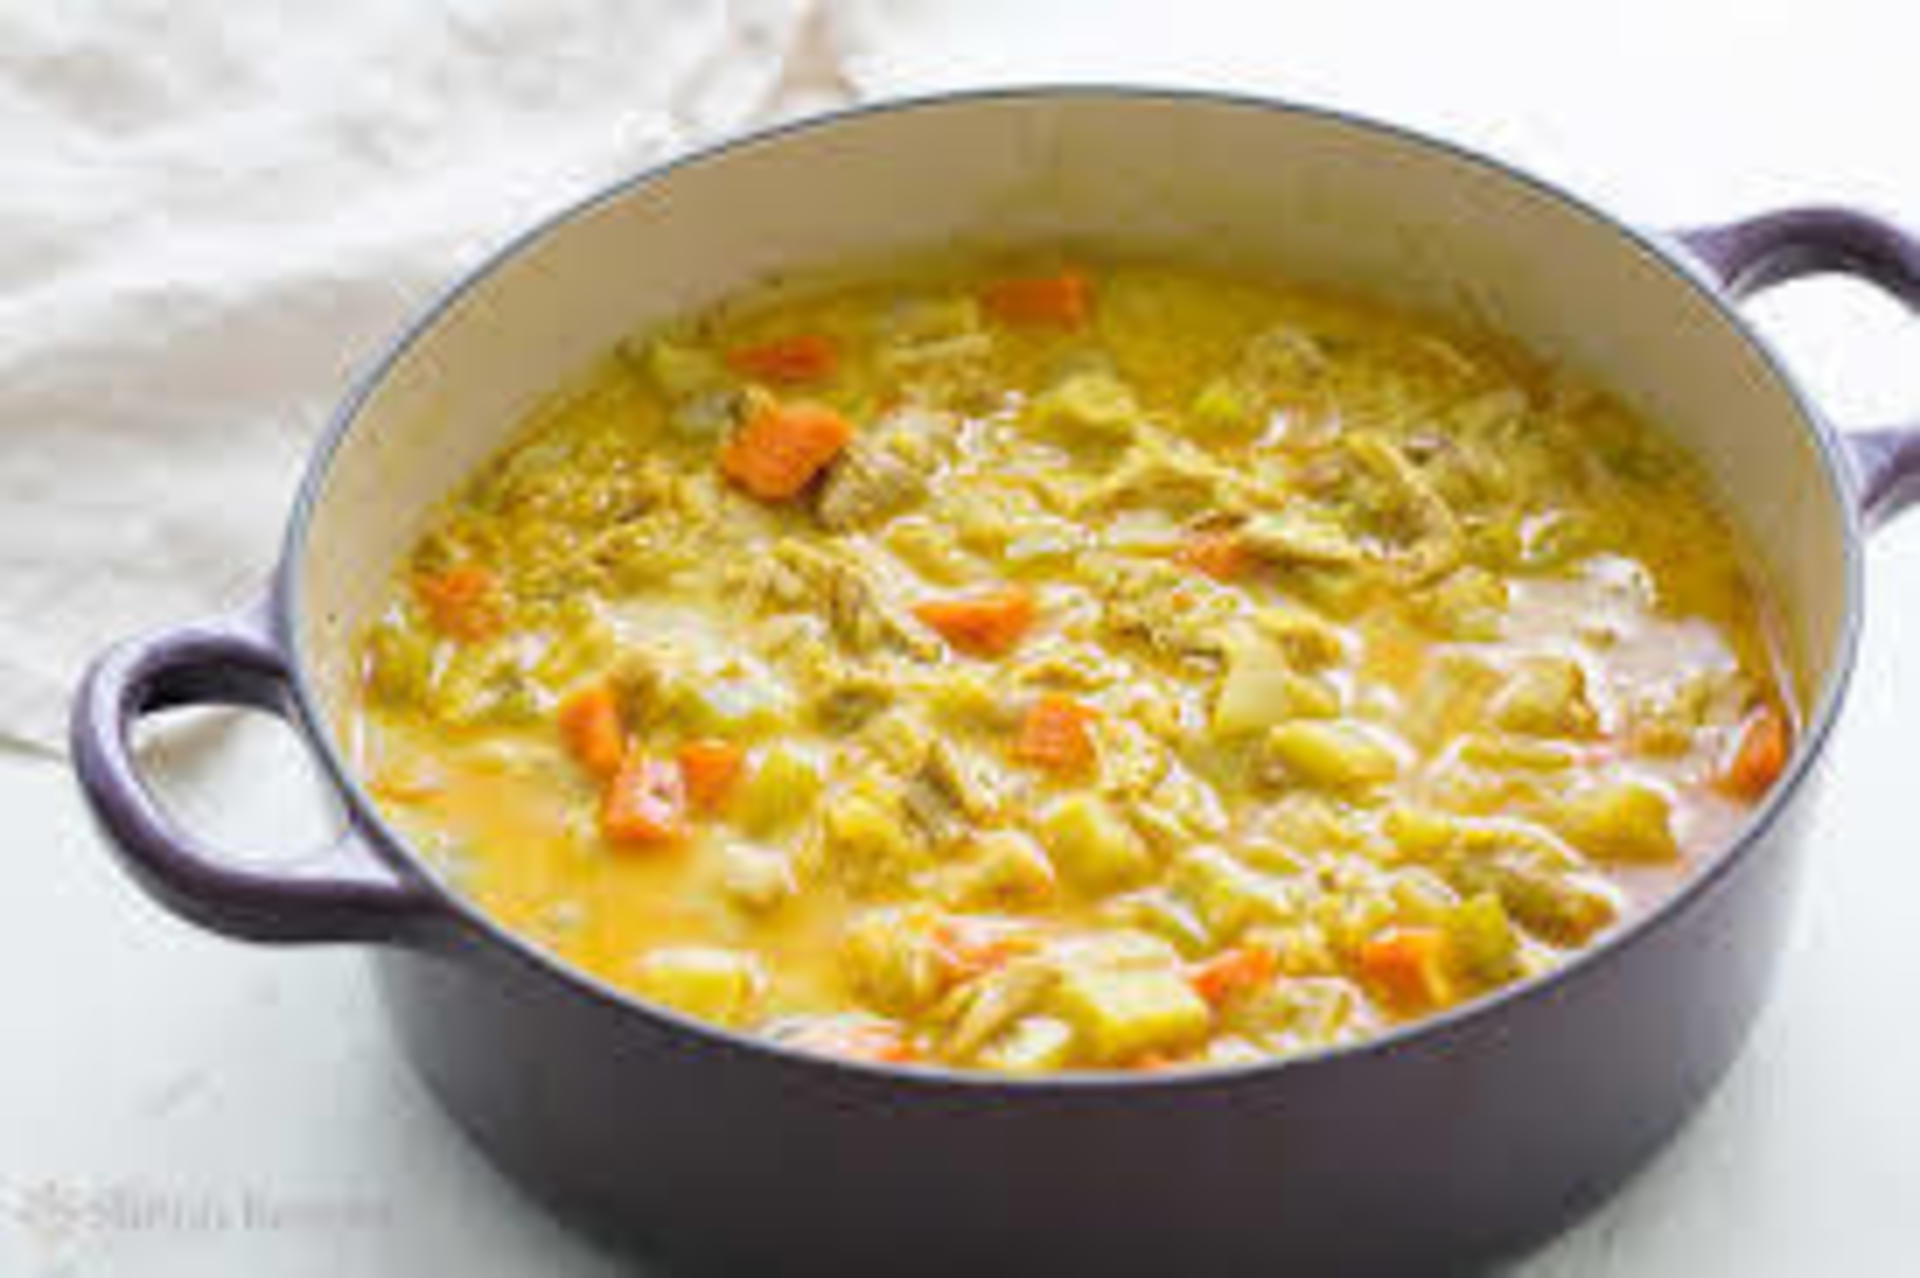 Сварить вкуснейший супчик. Чикен карри суп. Маллигатони суп. Суп с пшенкой и курицей. Суп куриный по-индийски.